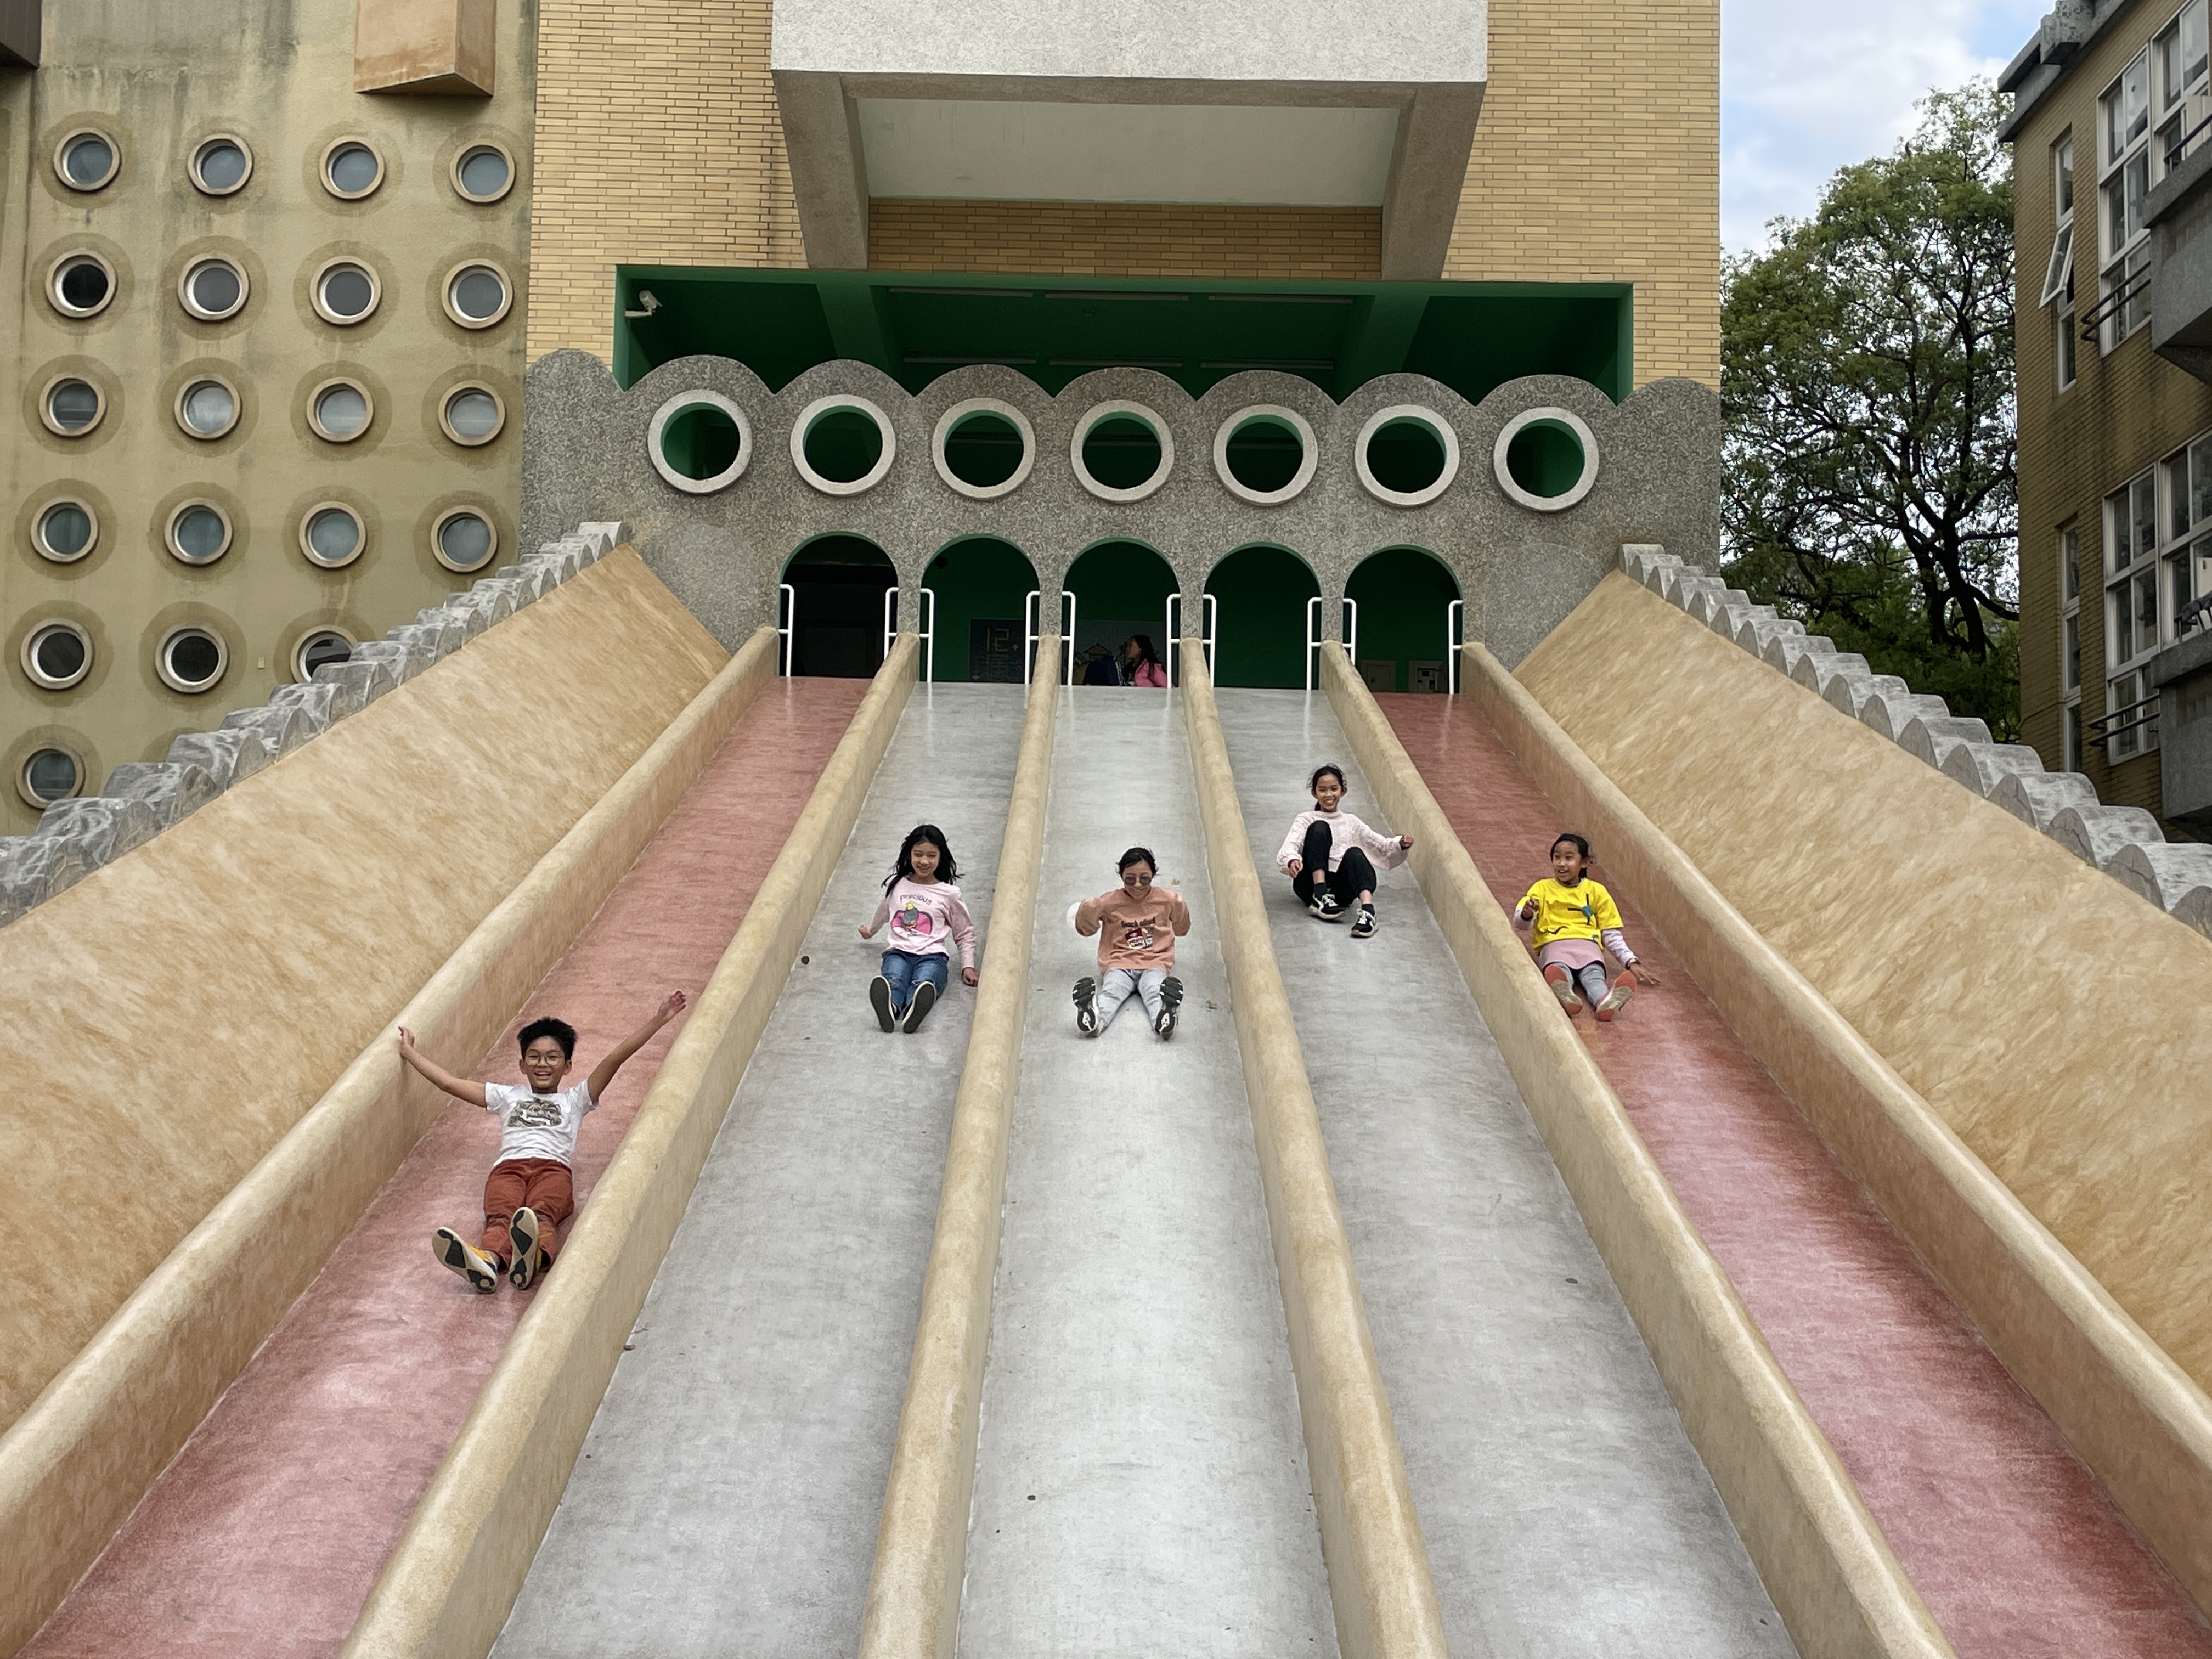 新竹市阳光国小校内有座2层楼高的特色巨型滑梯，因不符儿童游戏场安全规范去年封闭近1年，终于在今年初重启，7个滑道虽减为5个滑道。记者张裕珍／摄影